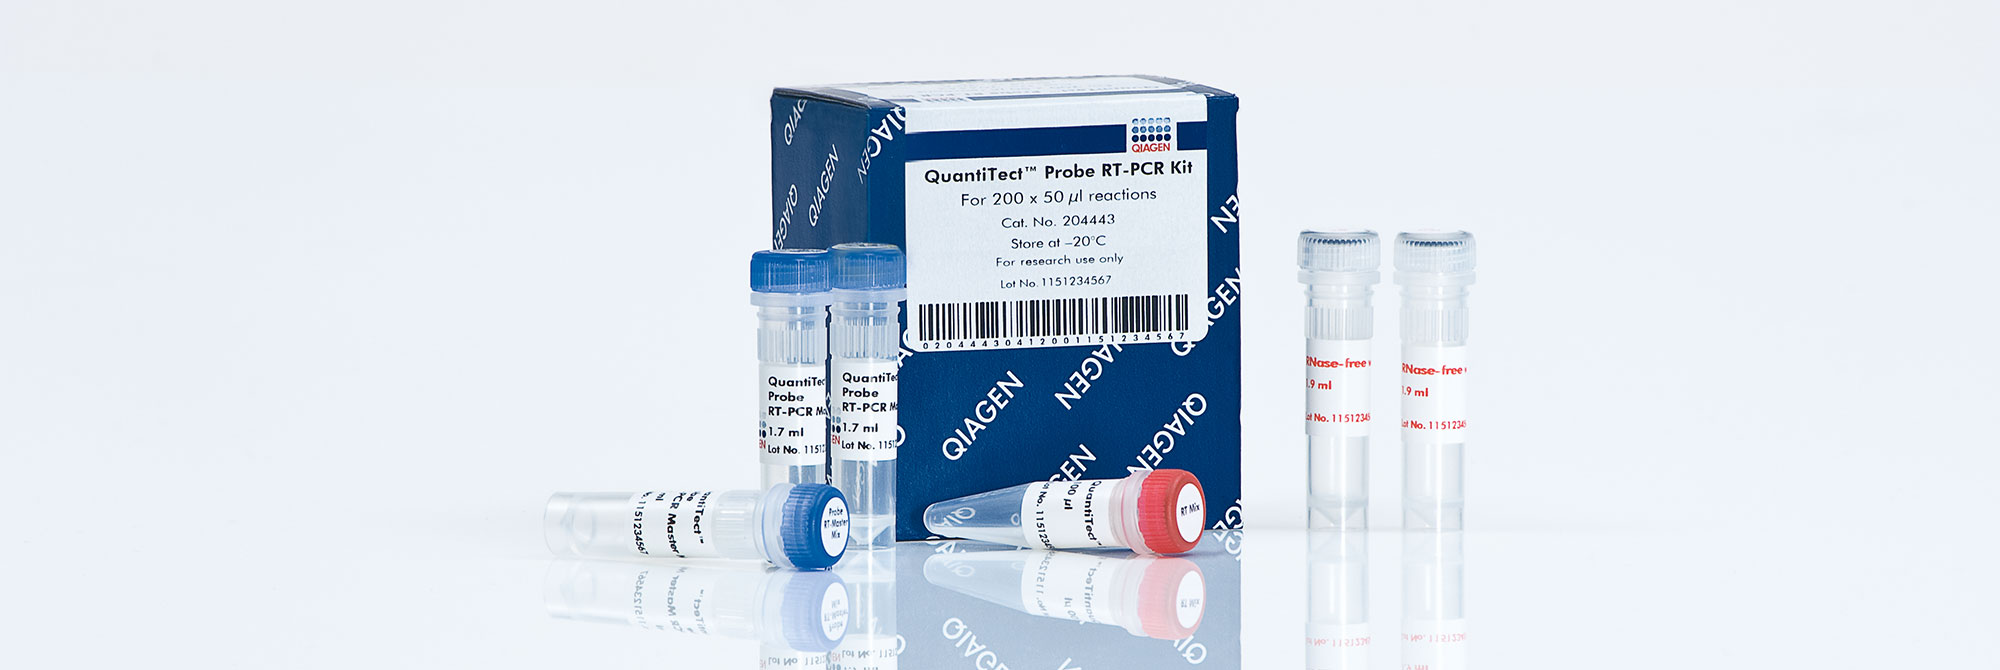 Image of QuantiTect Probe RT-PCR Kit